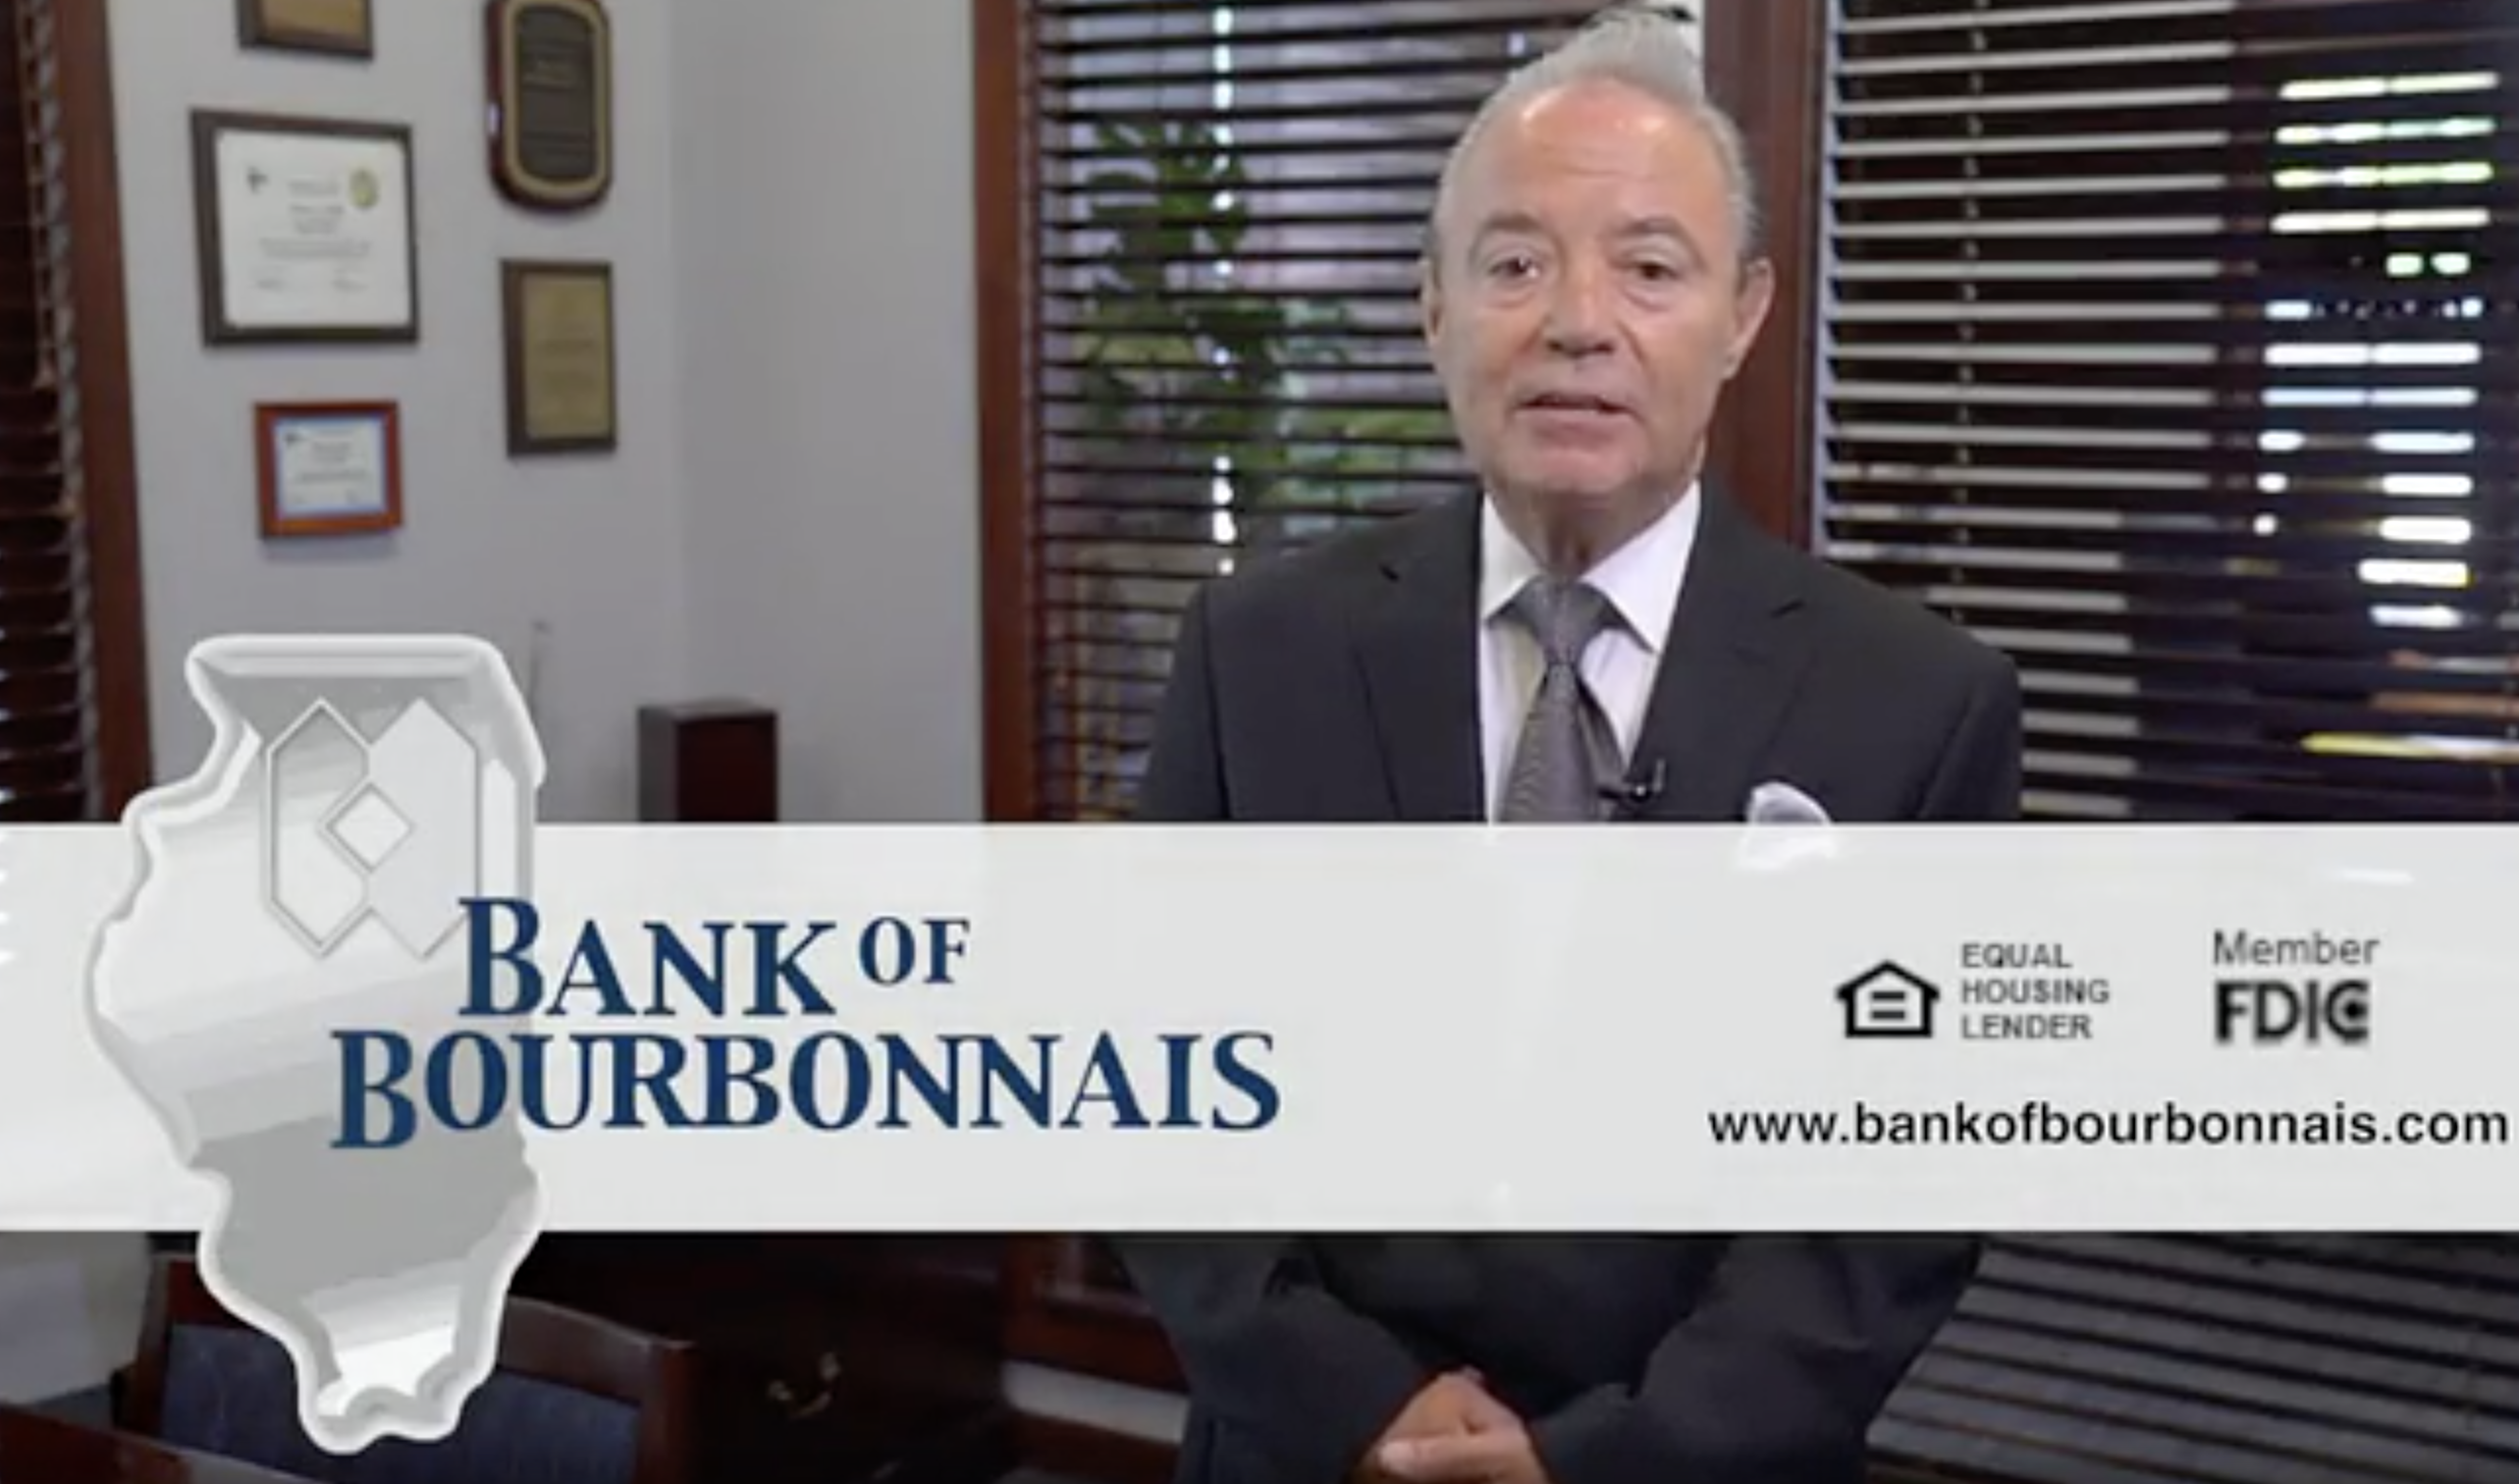 Bank of Bourbonnais/First Nations Bank